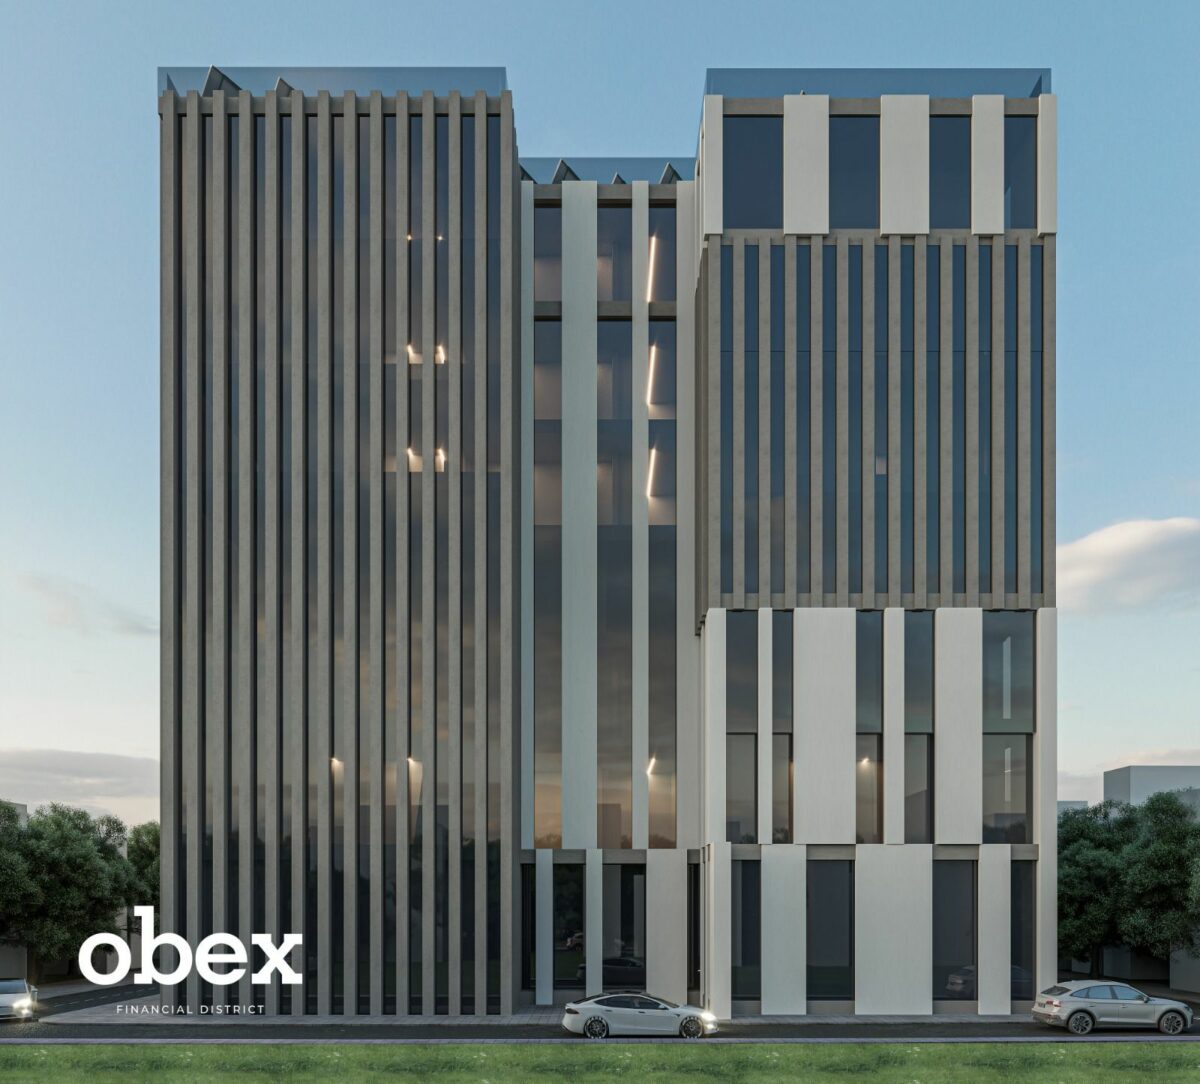 مول اوبيكس بيزنس هب العاصمة الإدارية Mall Obex Business Hub New Capital